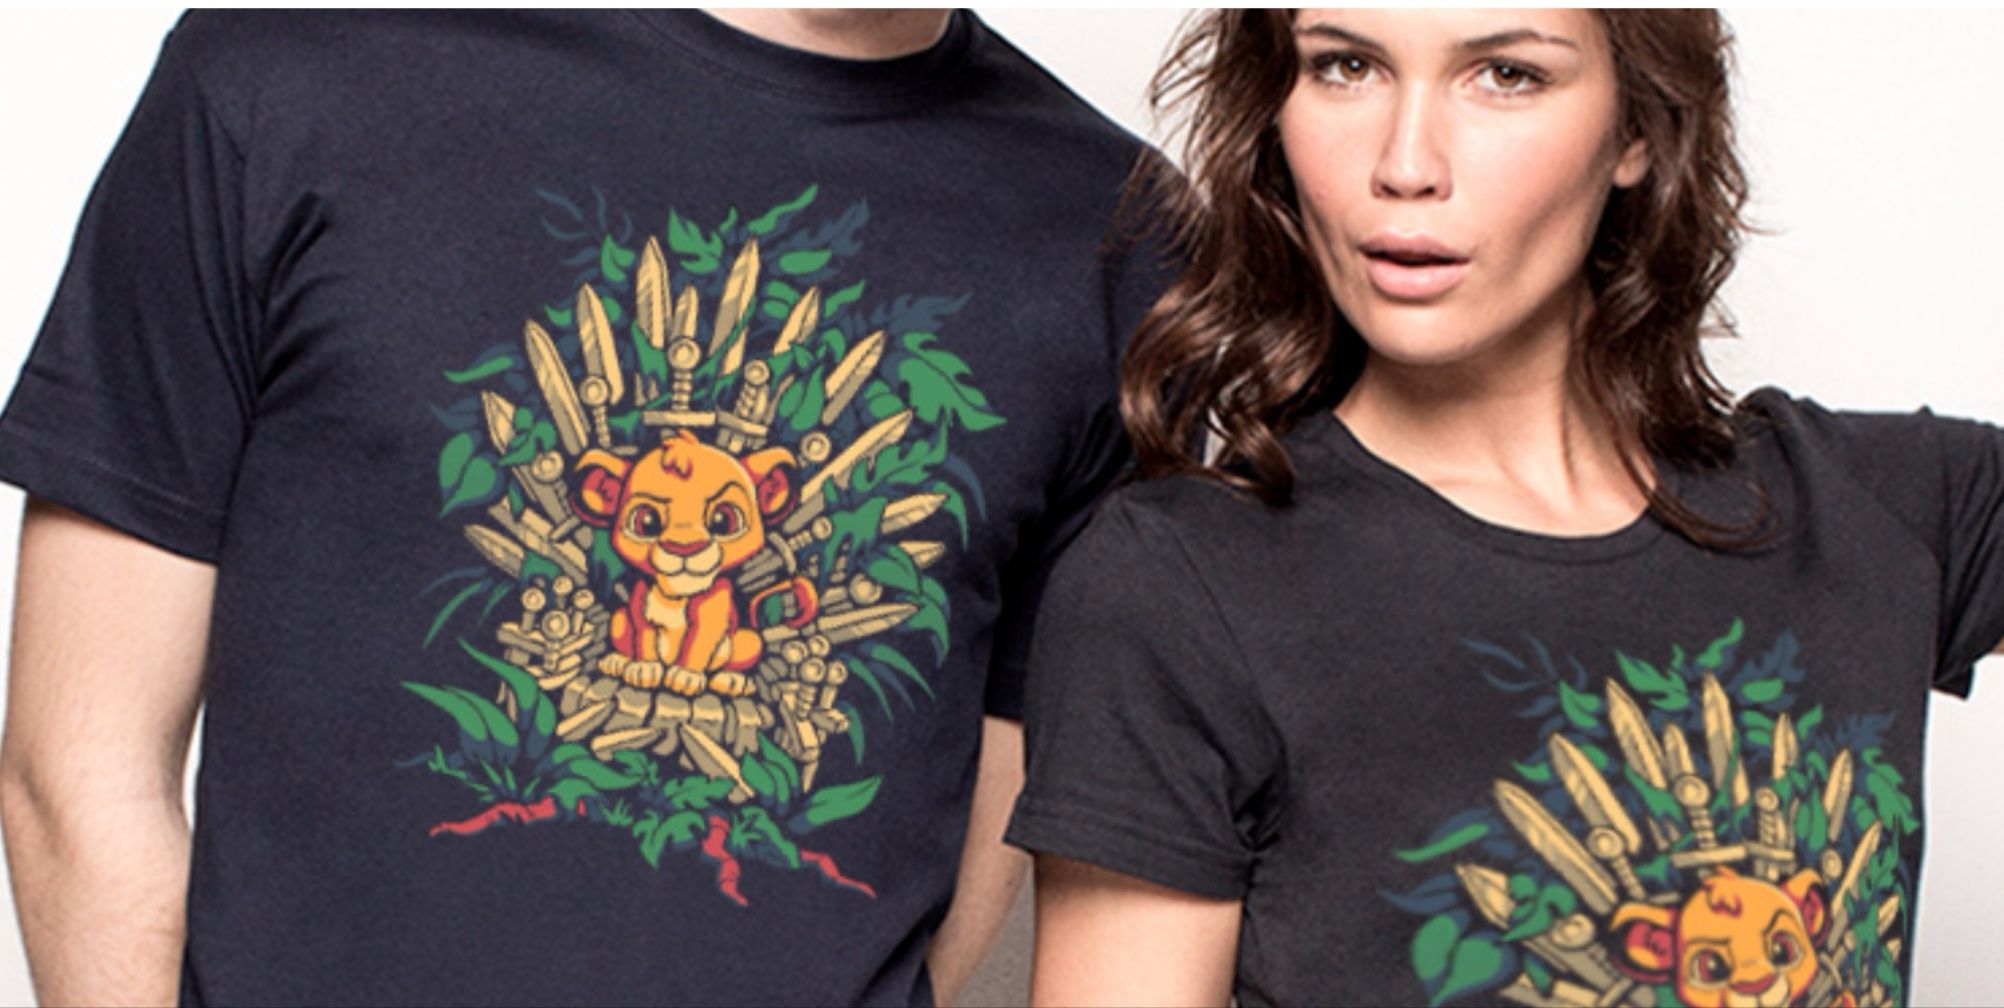 ¡Chollo flash! Camiseta Simba The Throne sólo 9,26€ y envío gratis